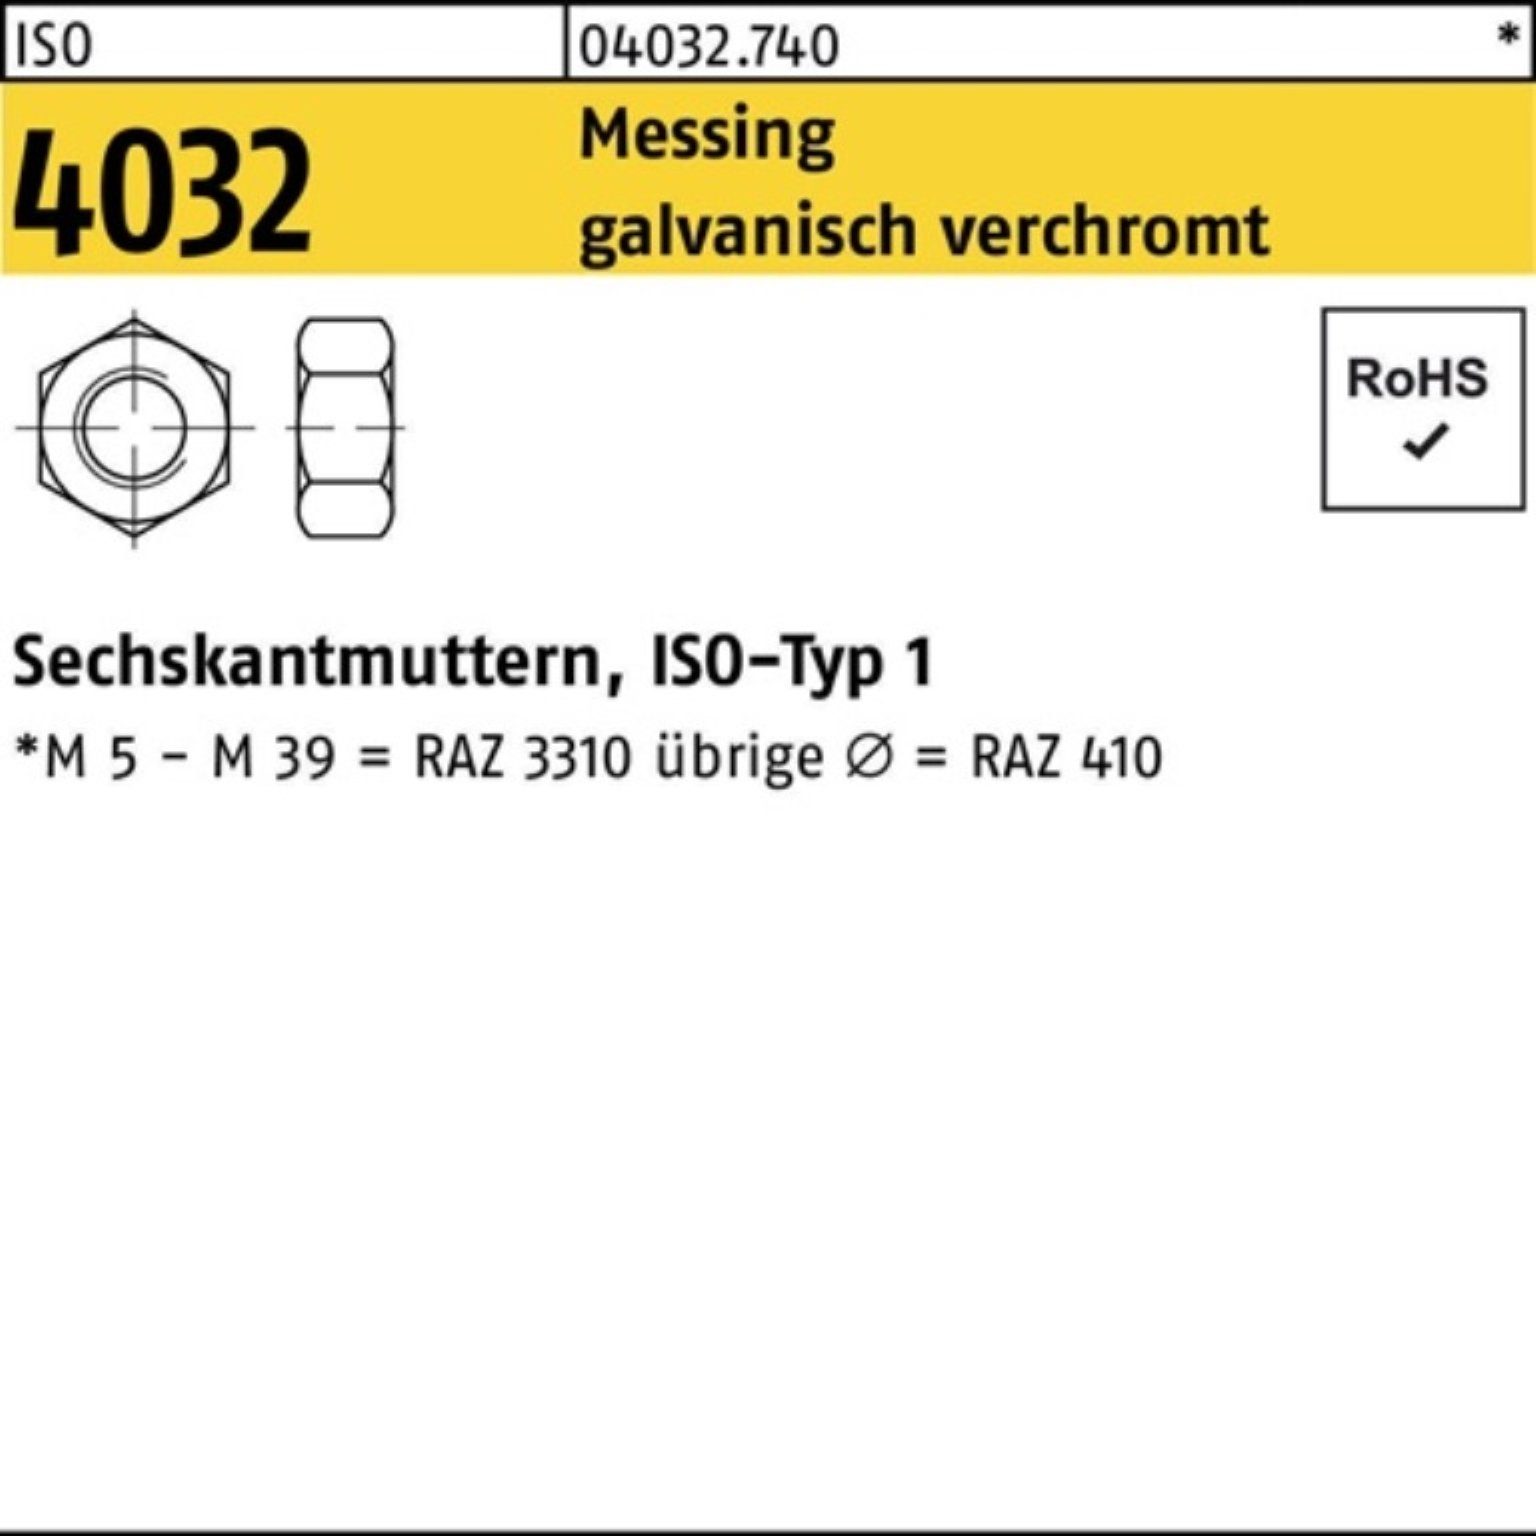 St verchromt Sechskantmutter Bufab 4032 M3 Messing 100 Muttern ISO 100er galv. Pack